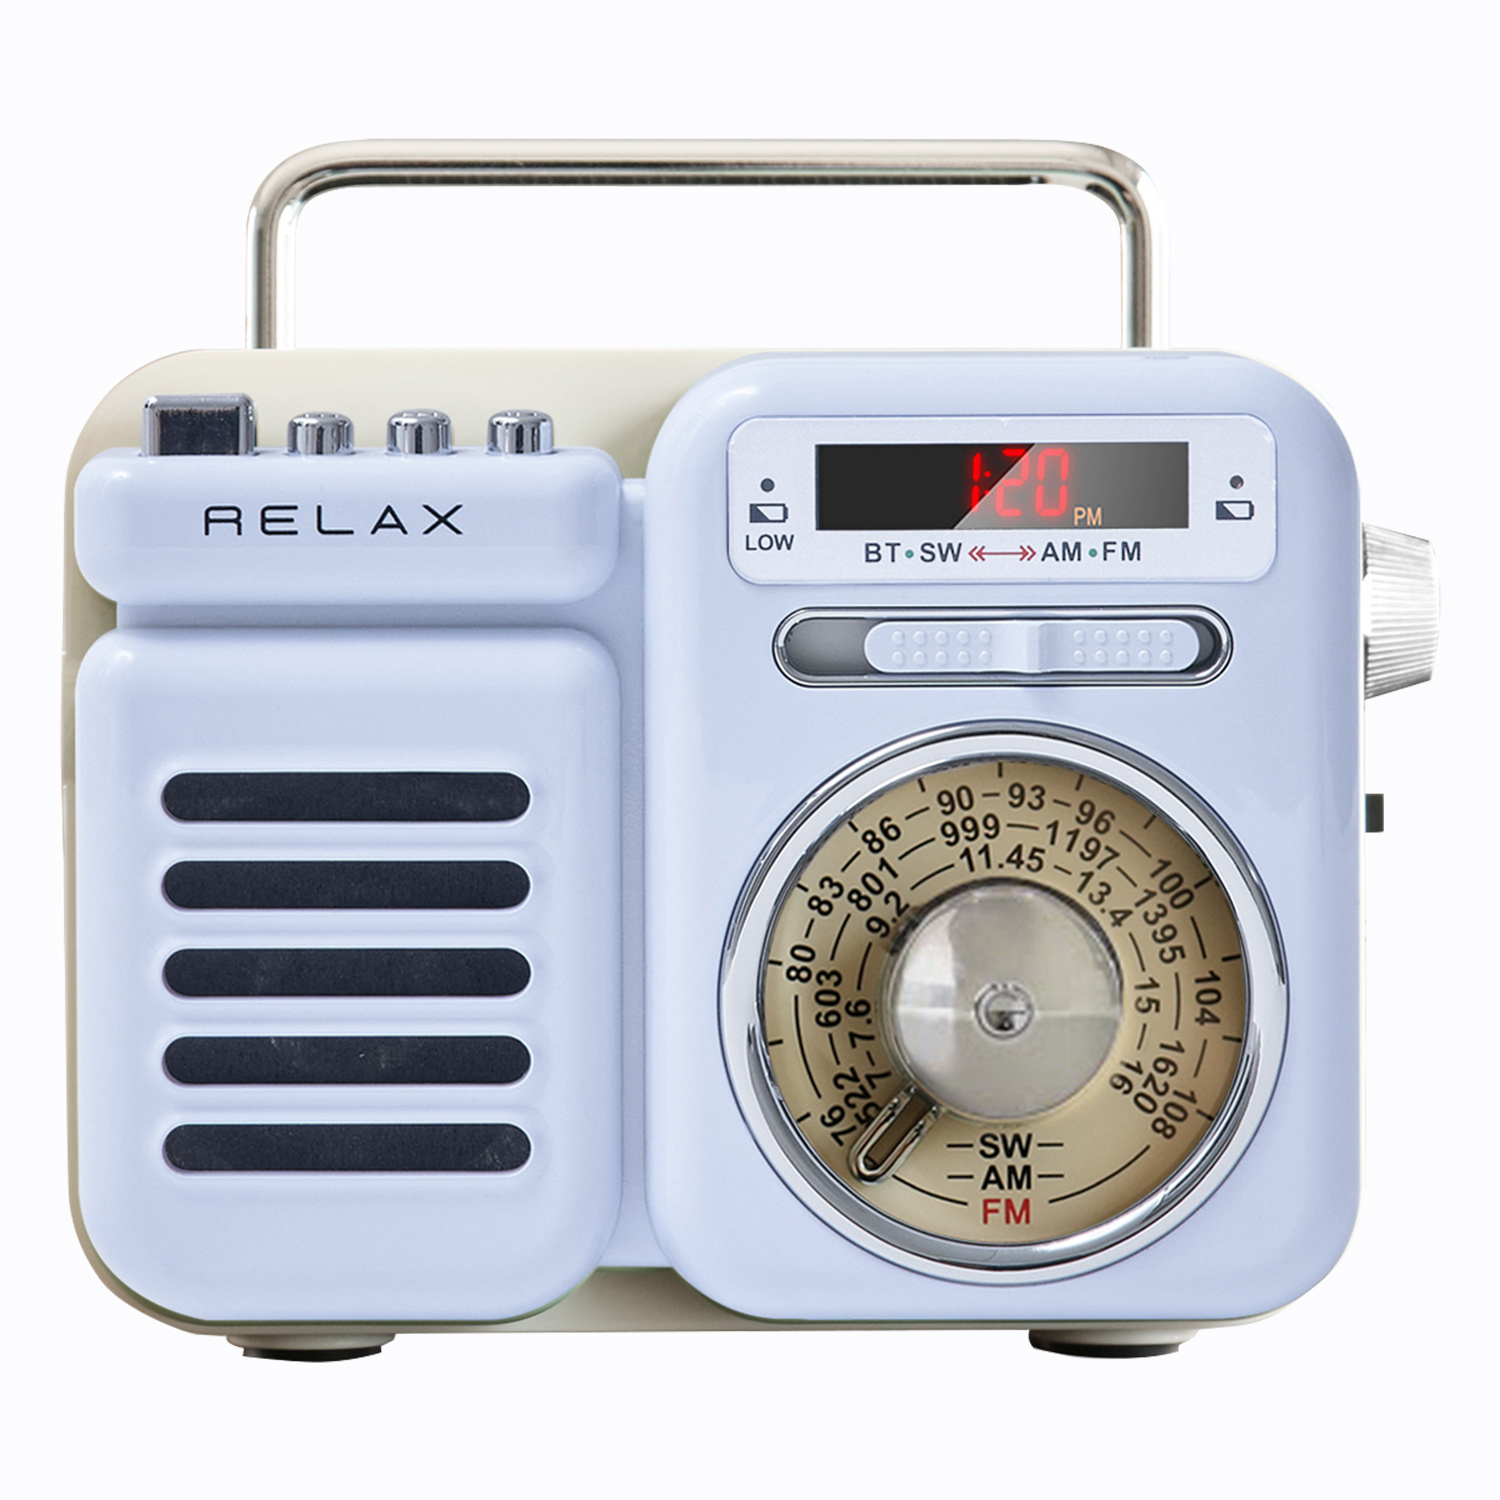 RELAX リラックス マルチ レトロ ラジオ 小型 携帯 防災用品 ライト アラーム SOS機能 ...